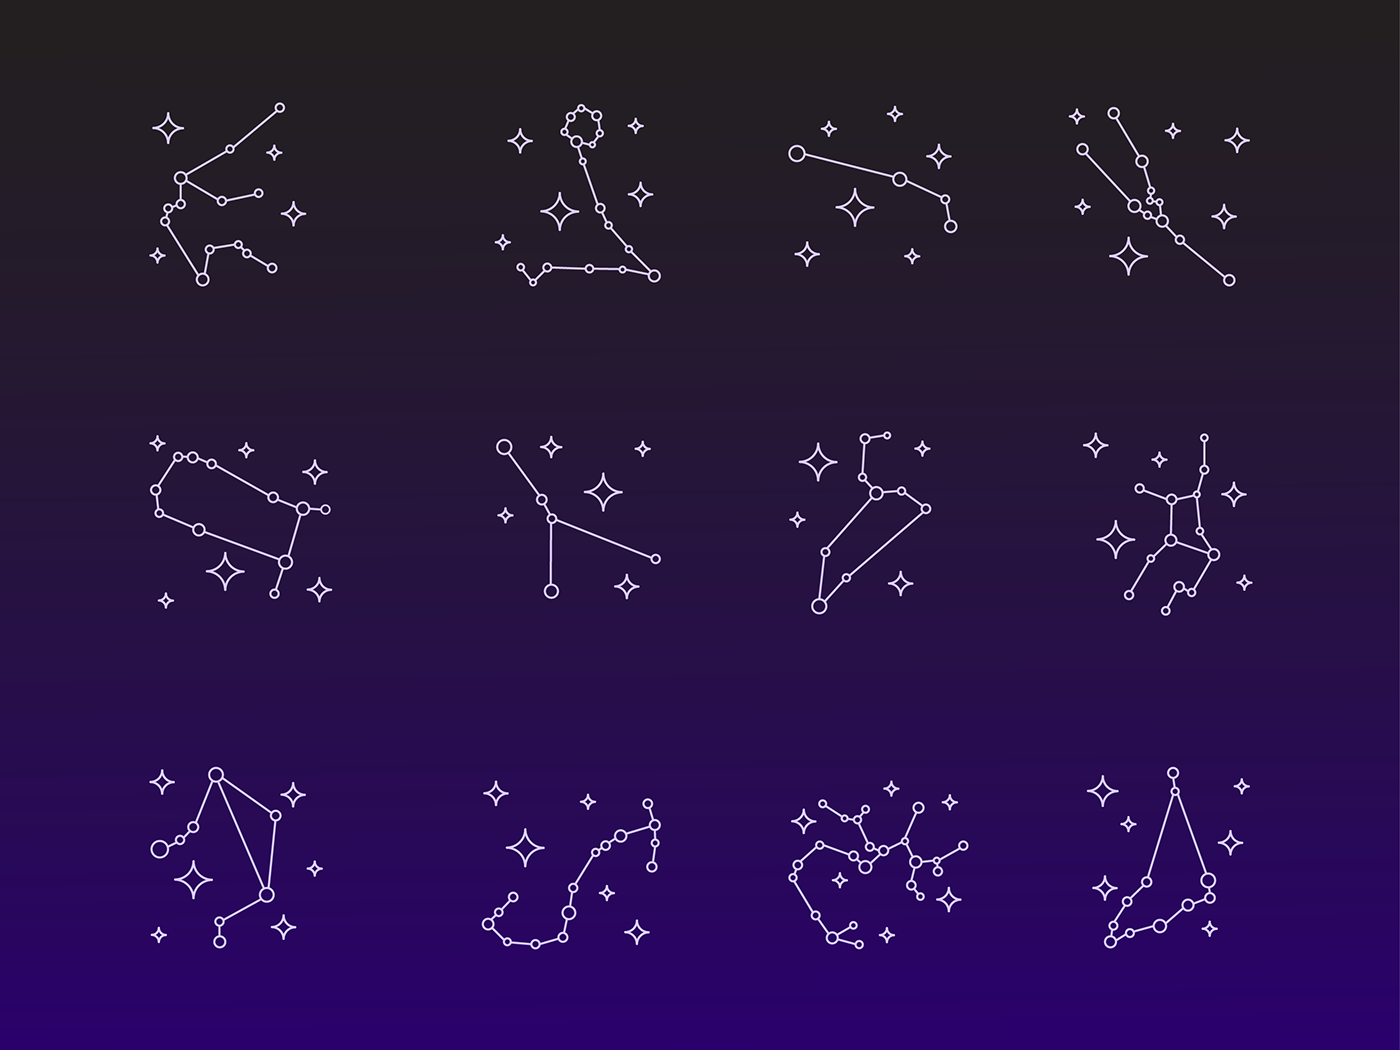 Созвездия. Созвездие рисунок. Созвездия знаков зодиака. Зодиакальные созвездия символы. Рисунок созвездий на небе